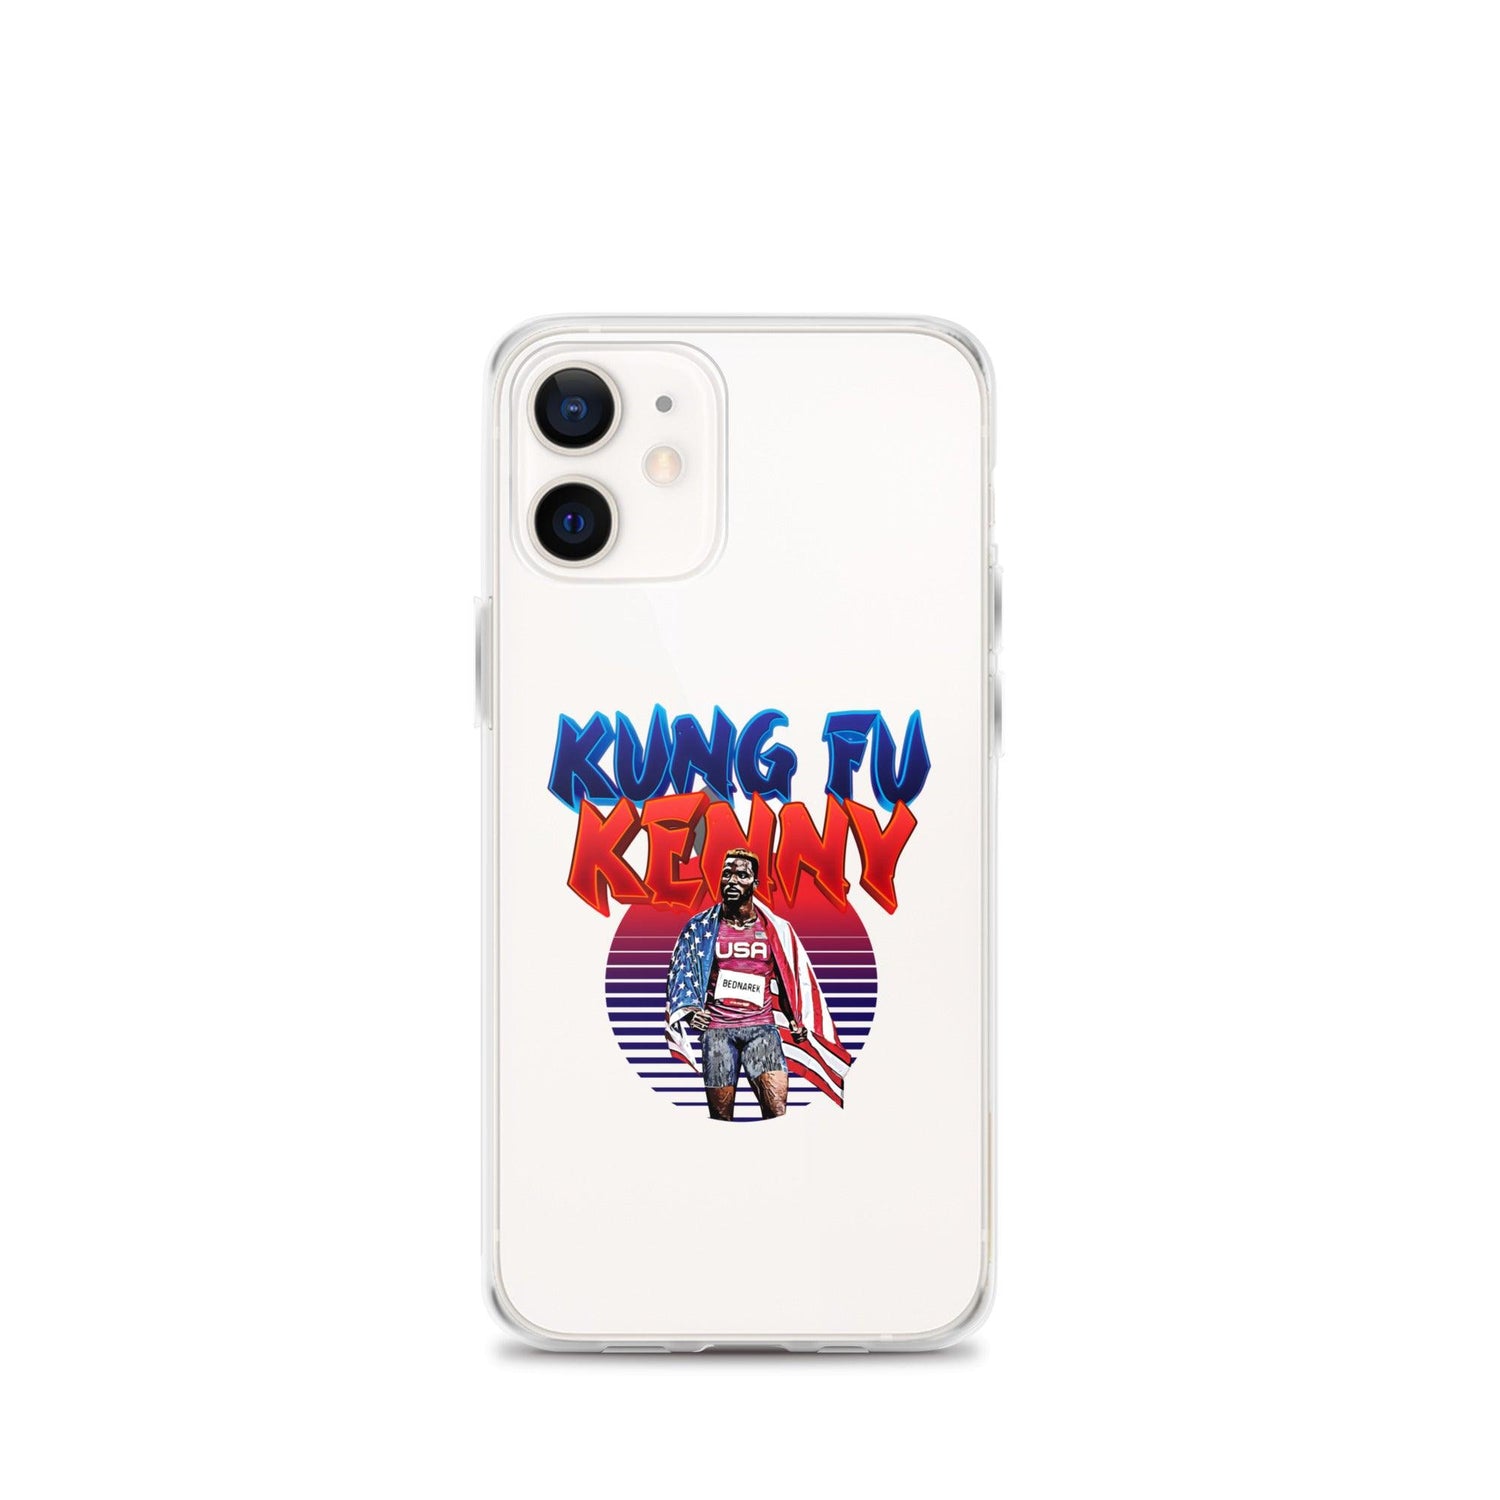 Kenny Bednarek "Kung Fu Kenny" iPhone® - Fan Arch